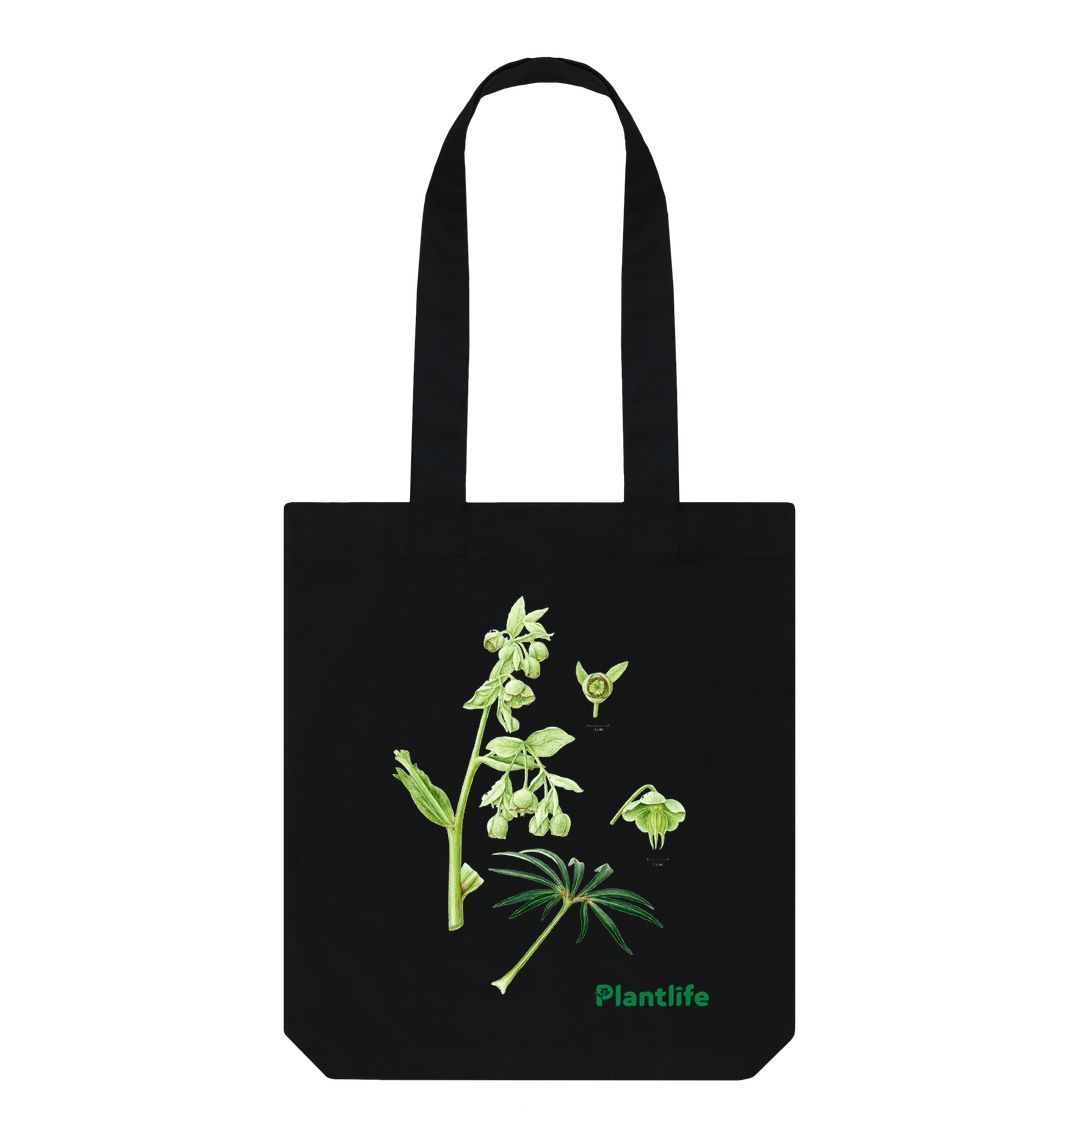 Black Plantlife Design Tote Bag - Helleborus foetidus (Stinking Hellebore)